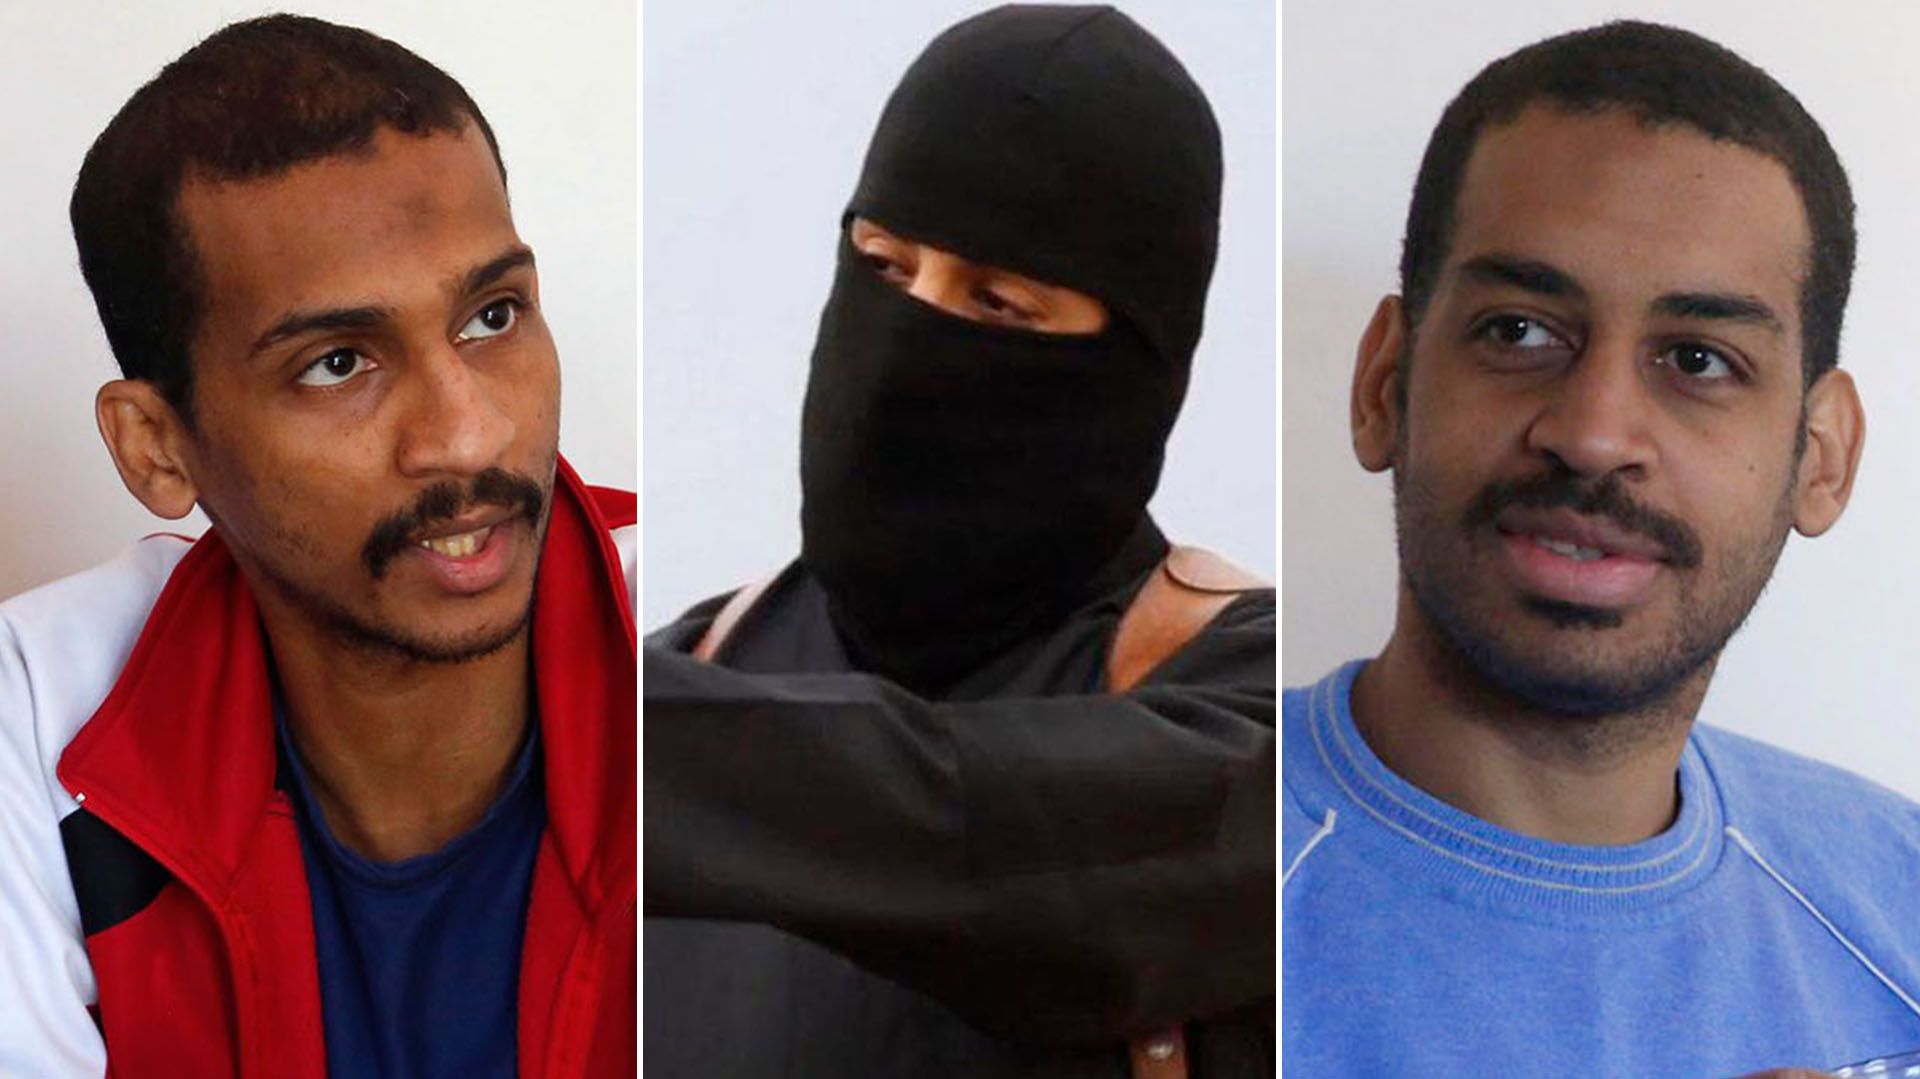 Los “Beatles del ISIS”, británicos: Shafee Elsheikh, el yihadista John -ya muerto- y Alexanda Kotey